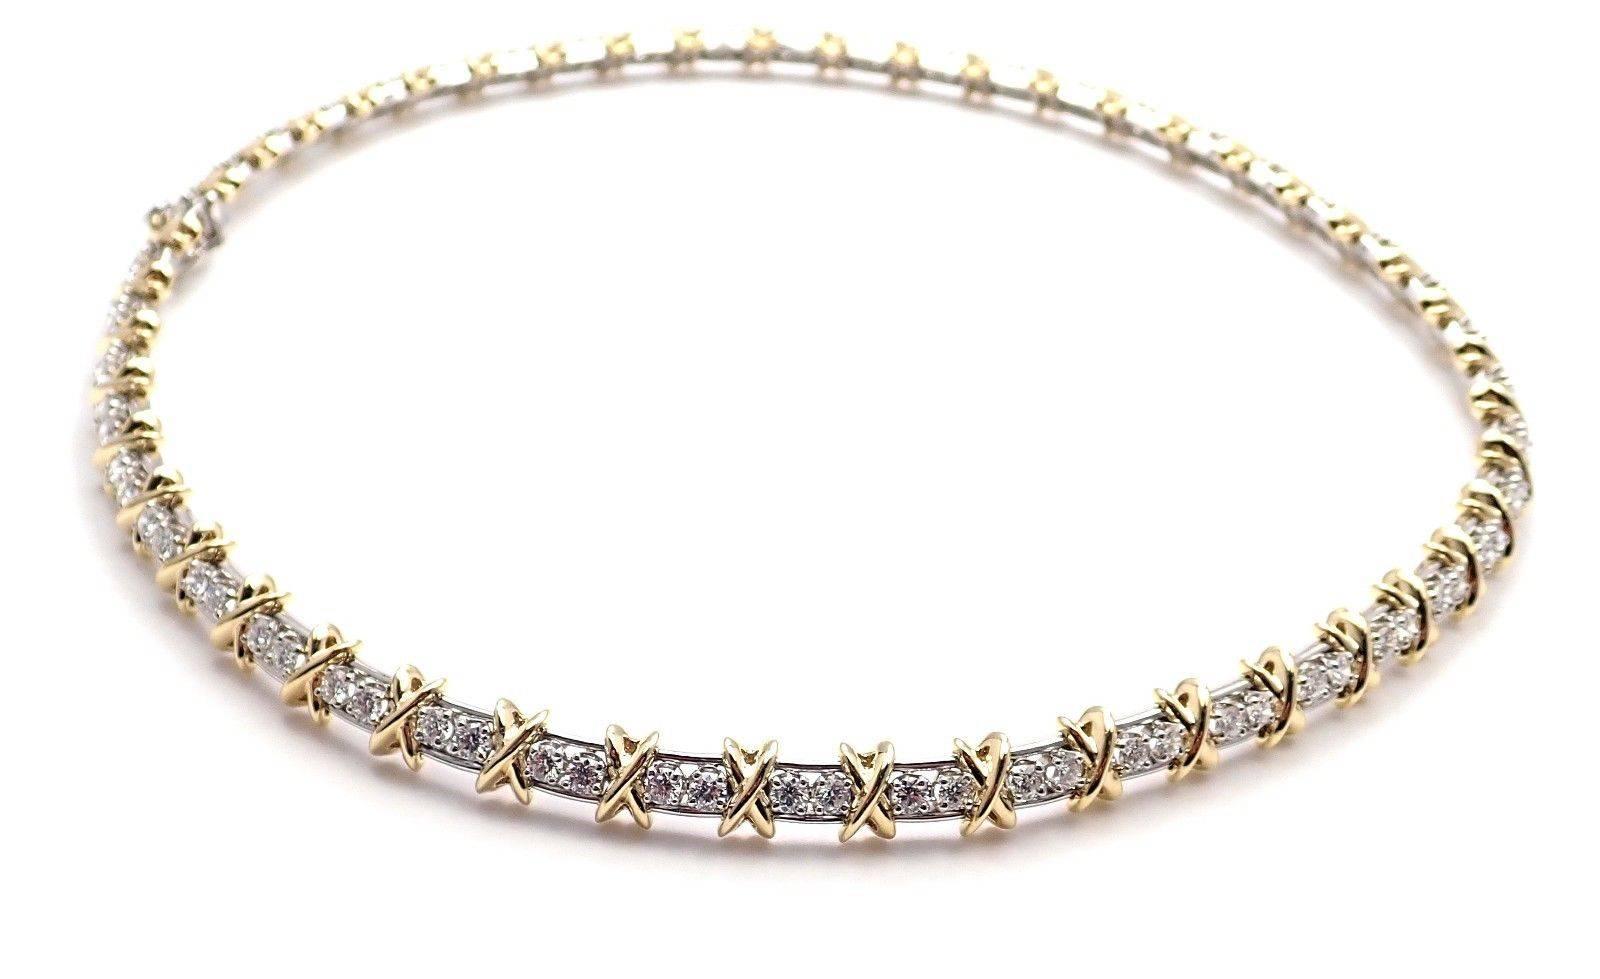 TIFFANY & CO.] Tiffany Cross necklace K18 Yellow Gold x Diamond Ladies  Necklace SA rank – KYOTO NISHIKINO